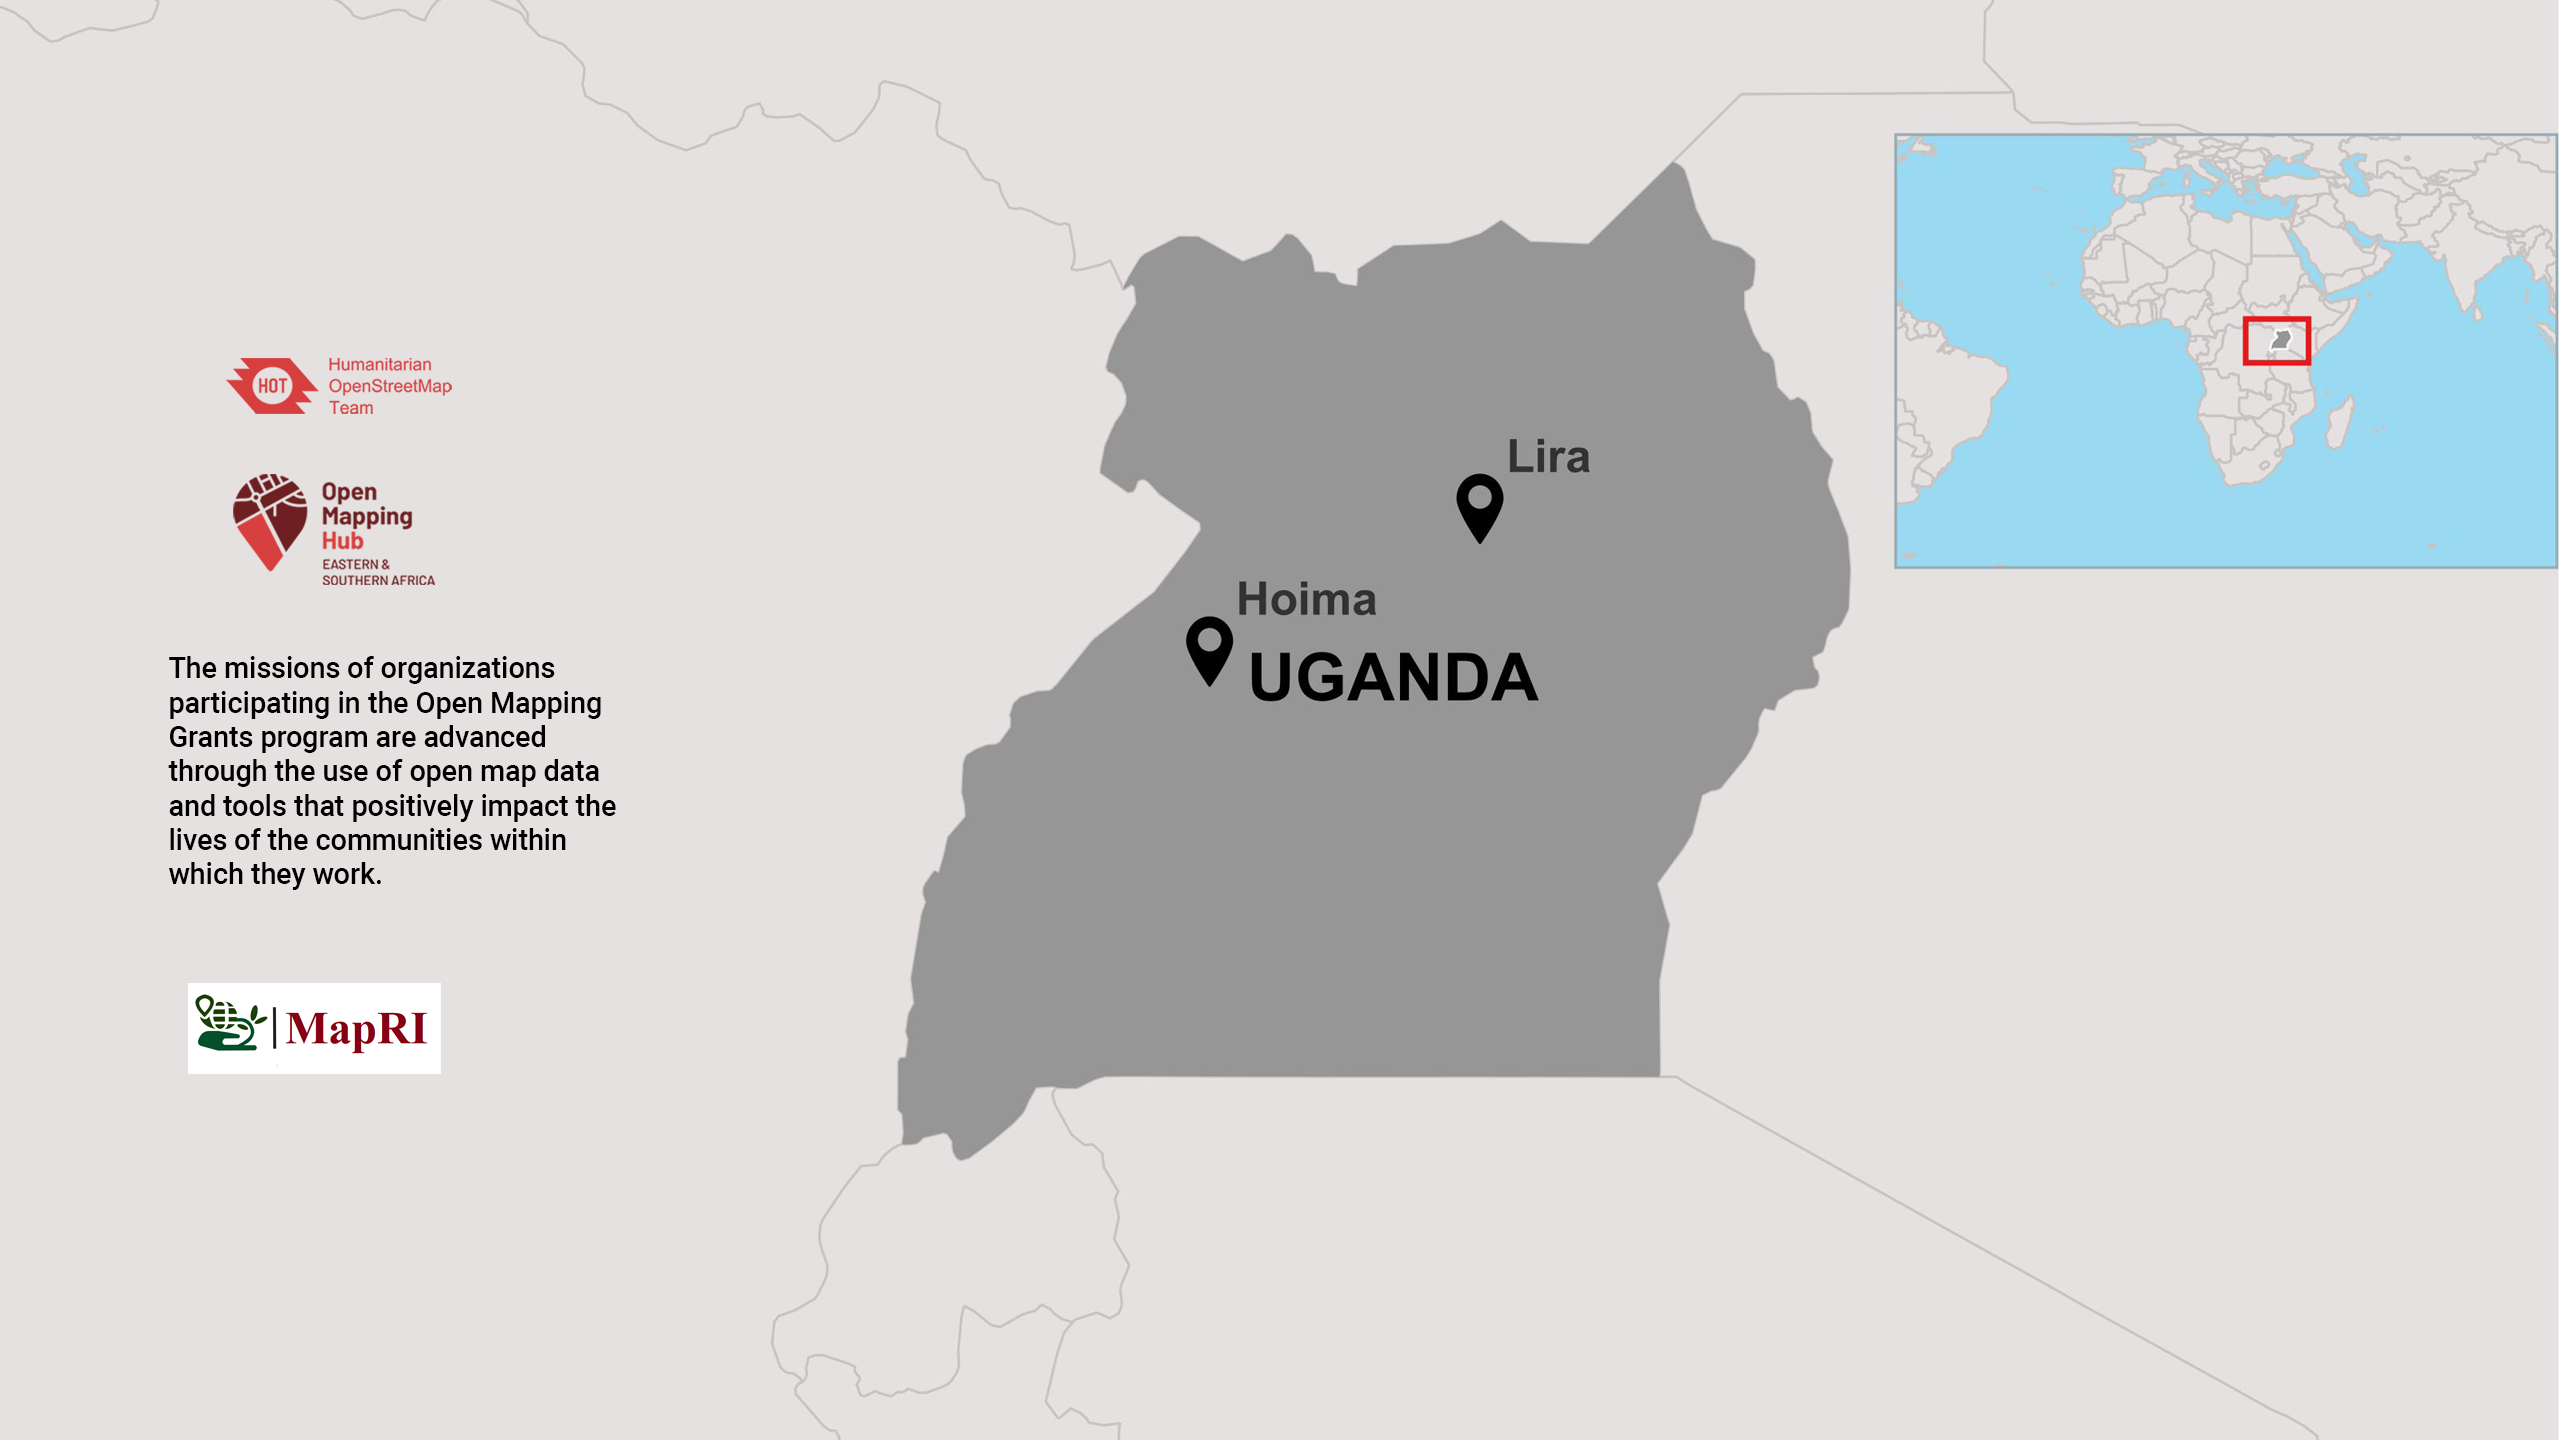 ESA_Informal SettlementsUganda3.png